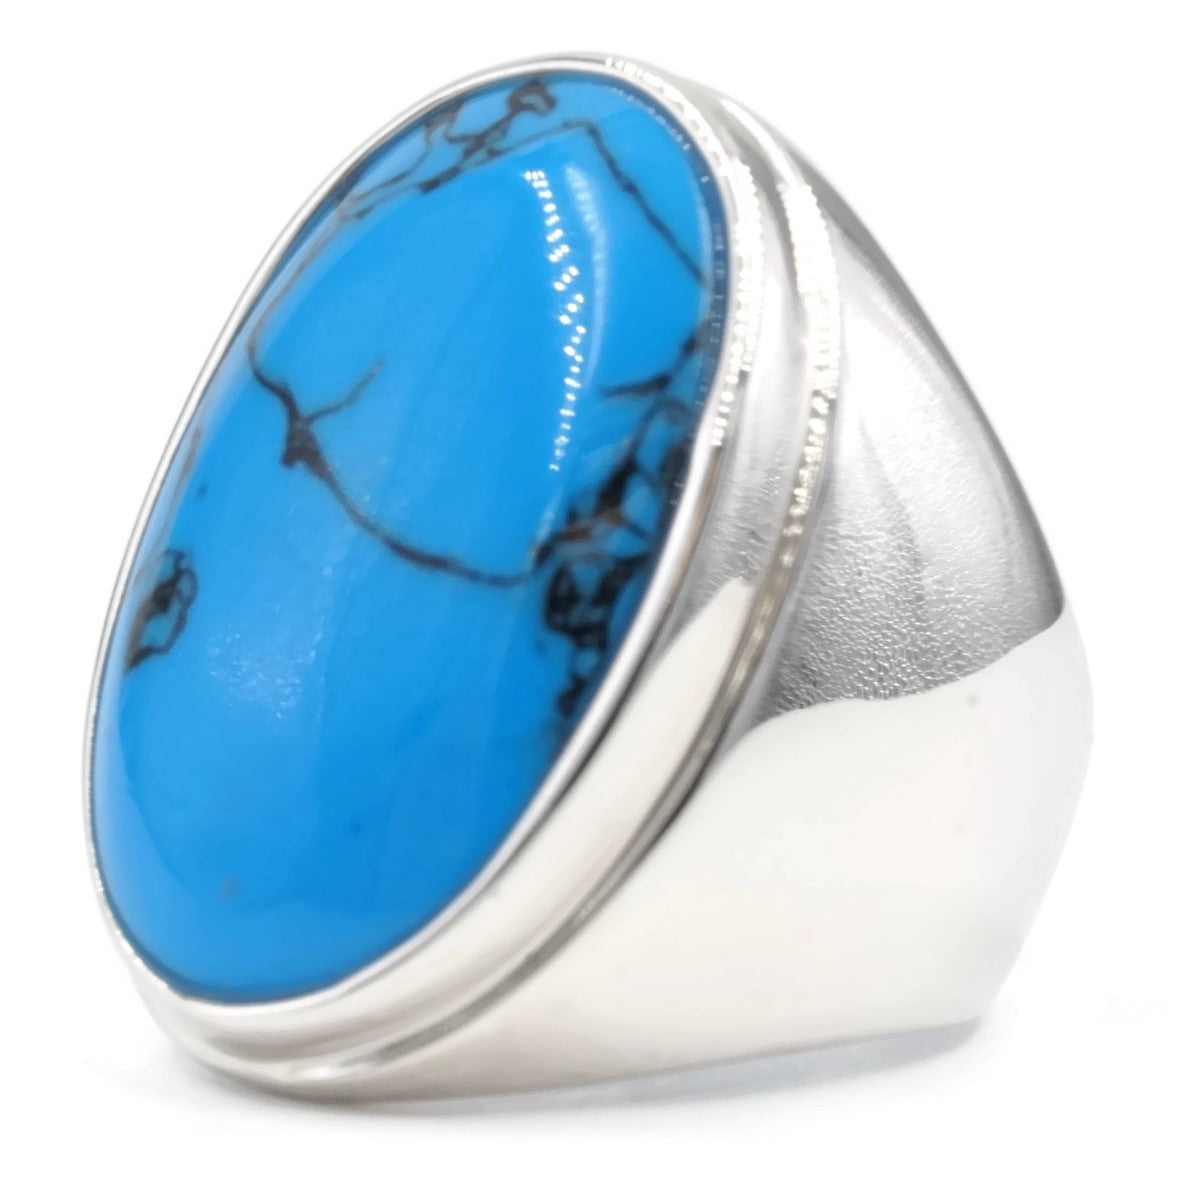 Large Single Stone Turquoise Ring